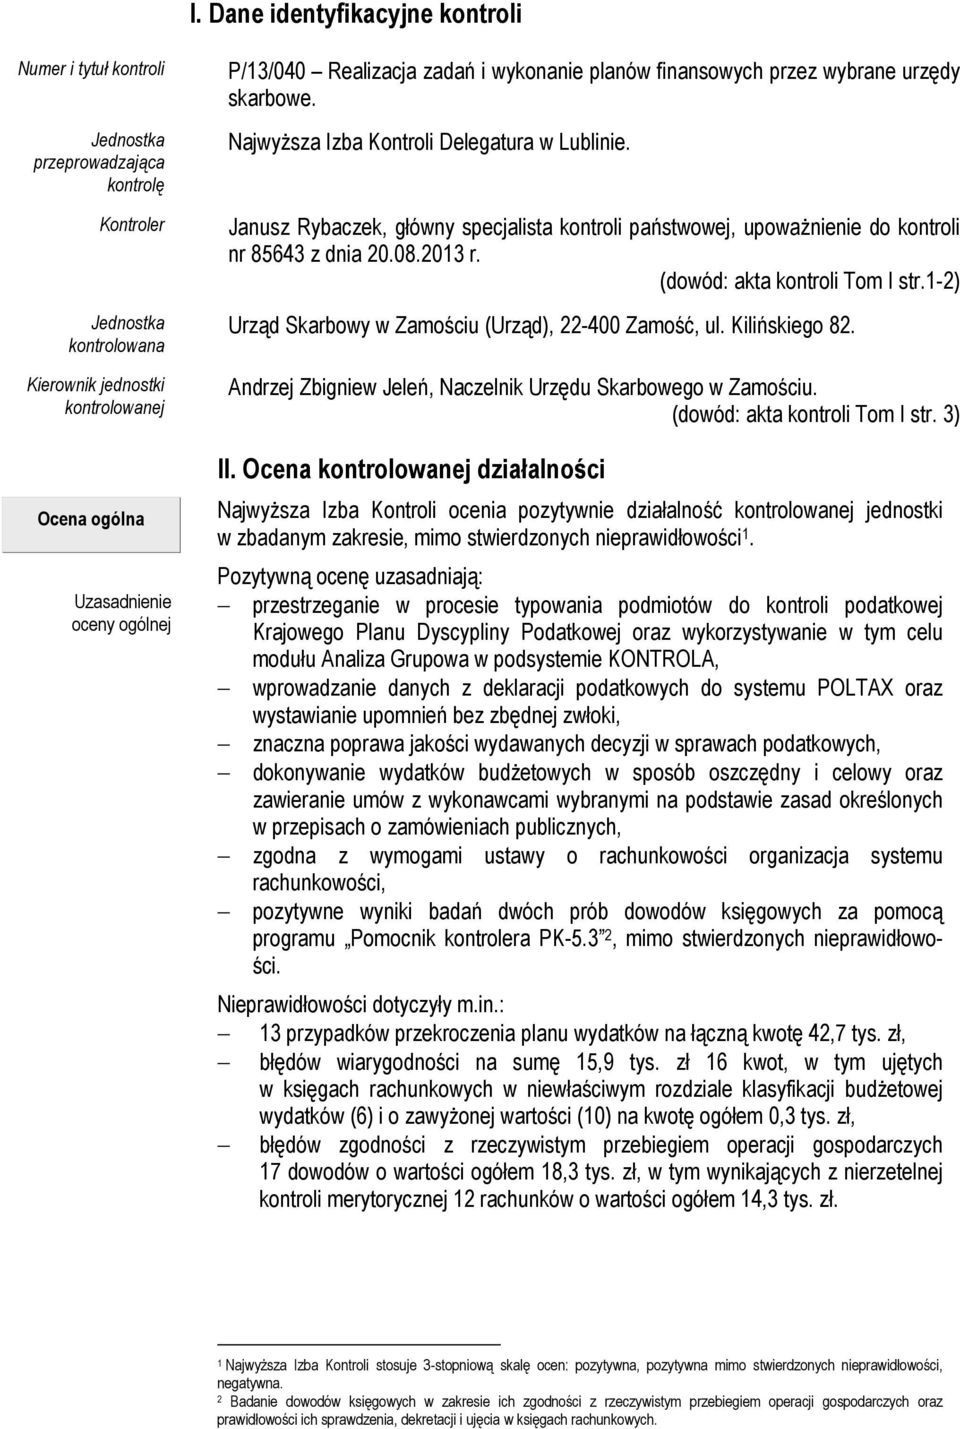 Janusz Rybaczek, główny specjalista kontroli państwowej, upoważnienie do kontroli nr 85643 z dnia 20.08.2013 r. (dowód: akta kontroli Tom I str.